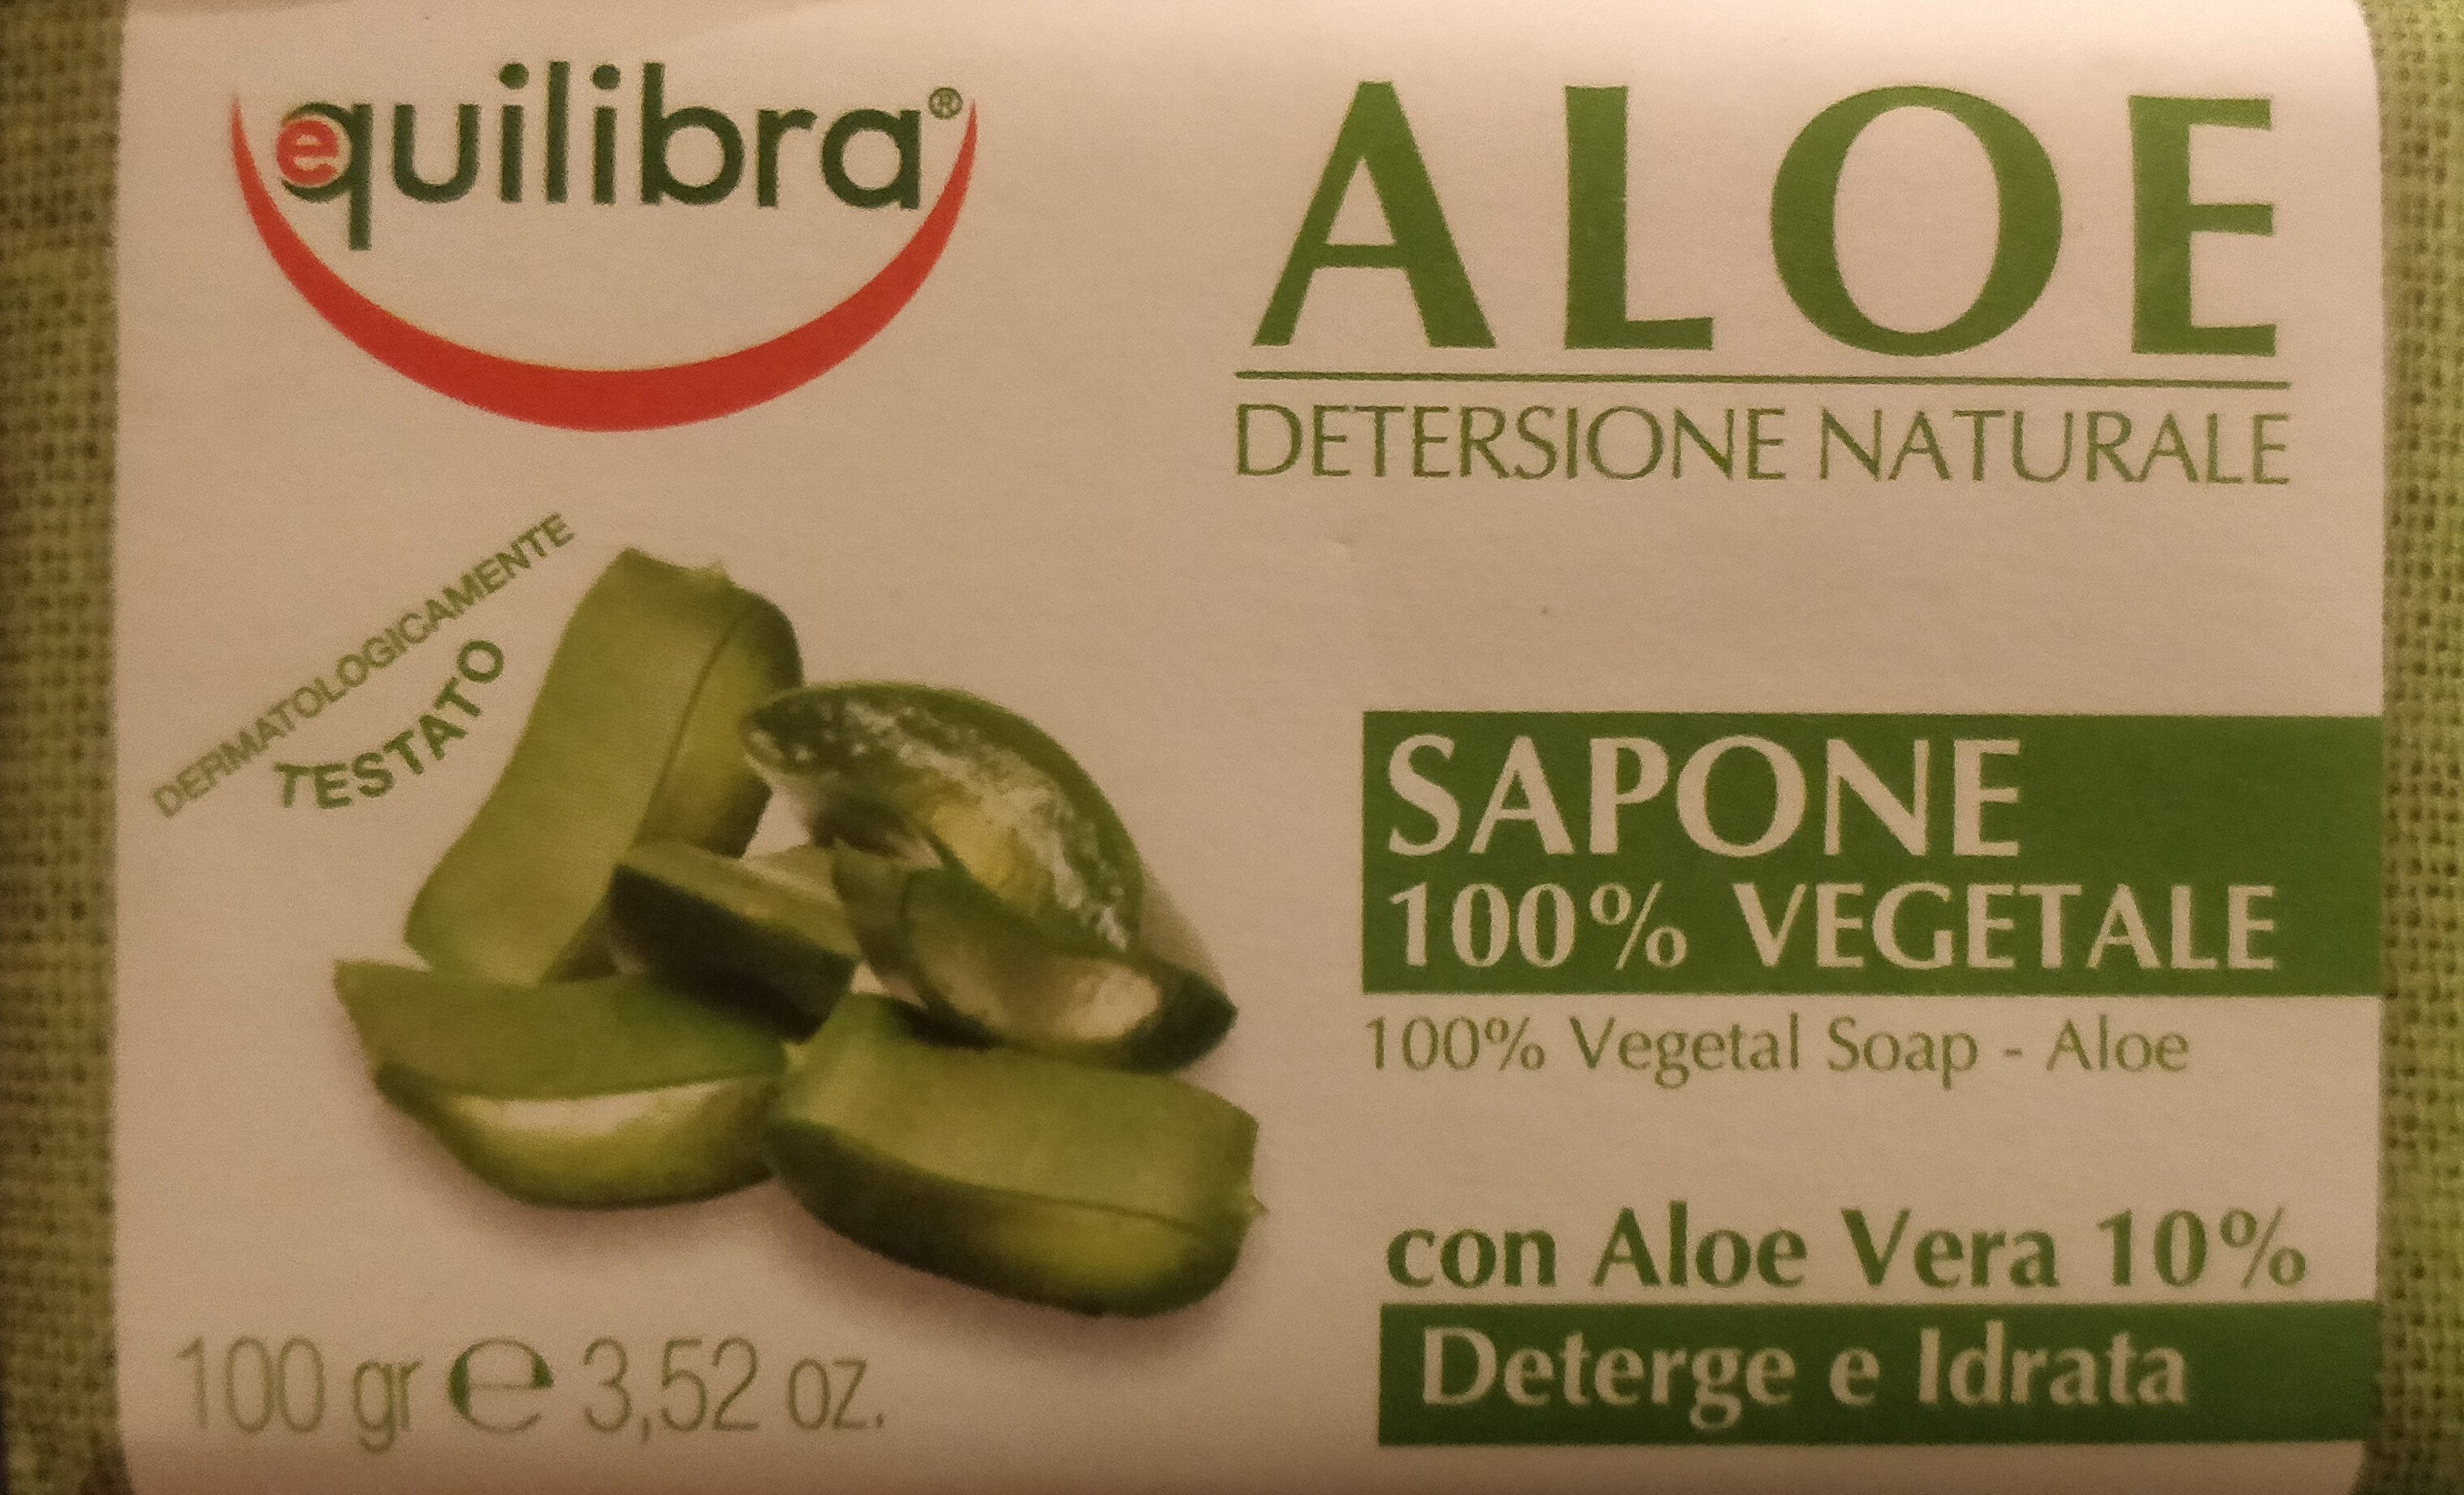 Aloe, detersione naturale - sapone 100% vegetale - Produto - it